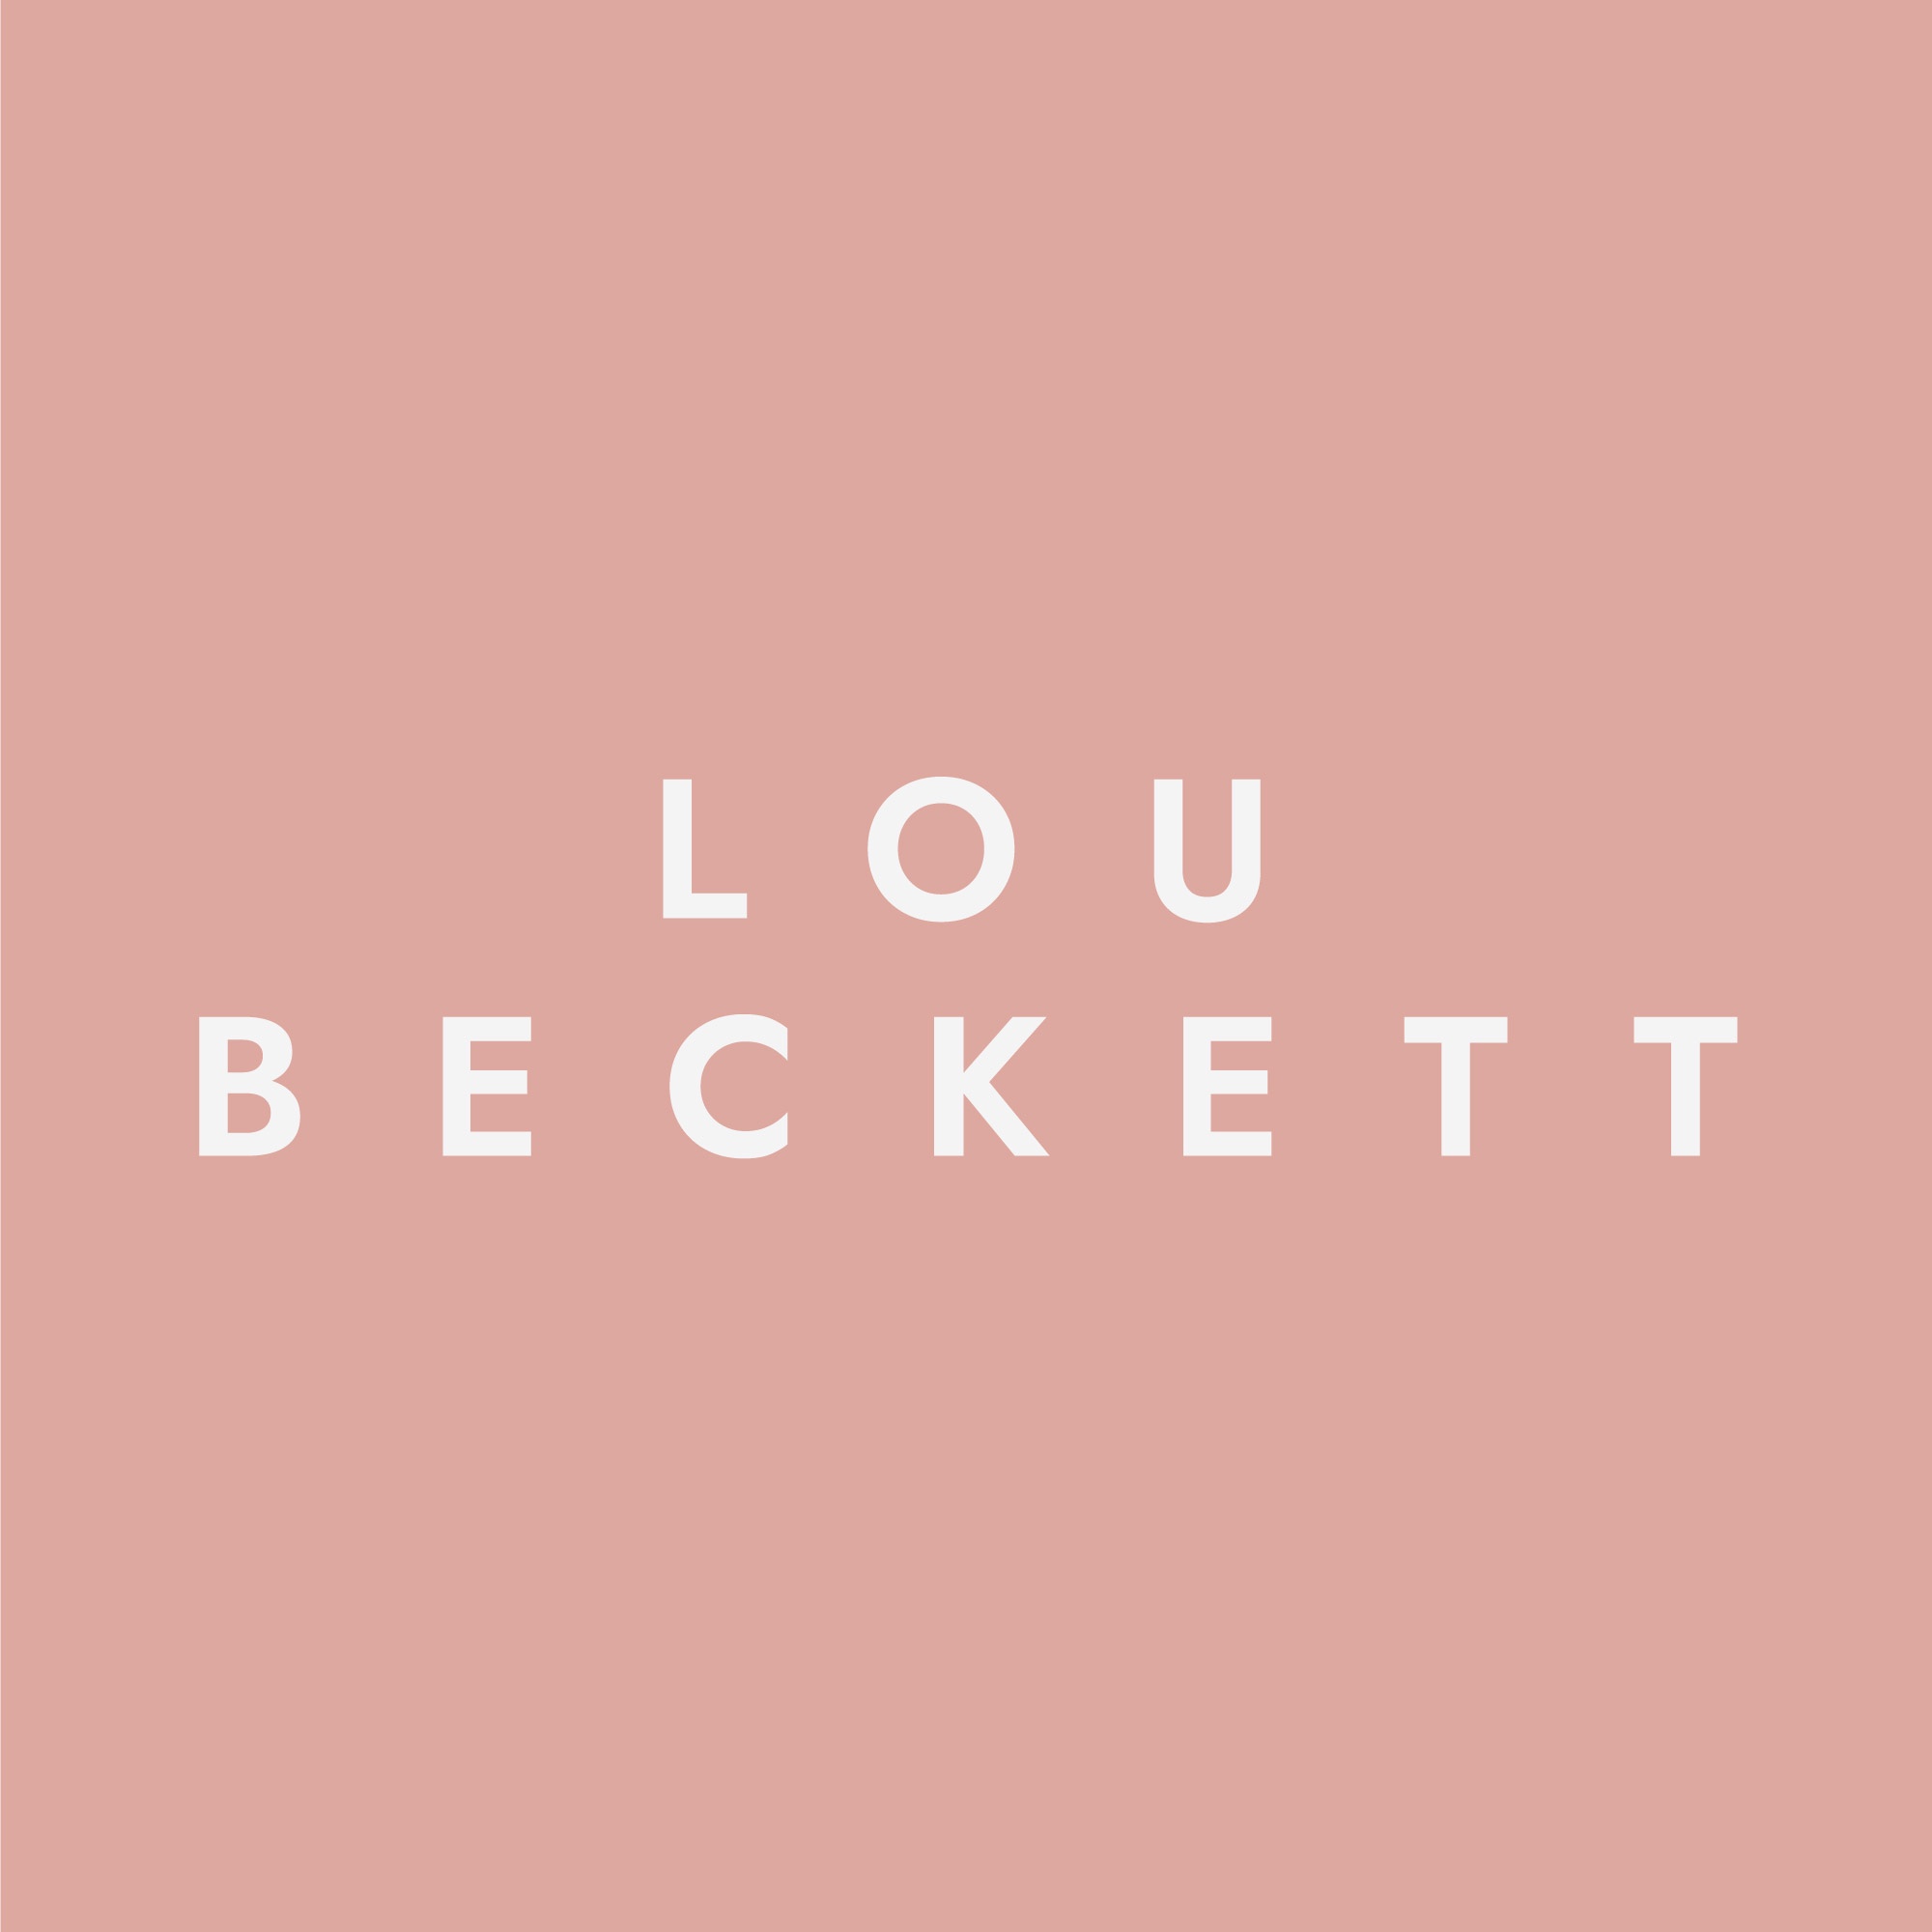 Lou Beckett